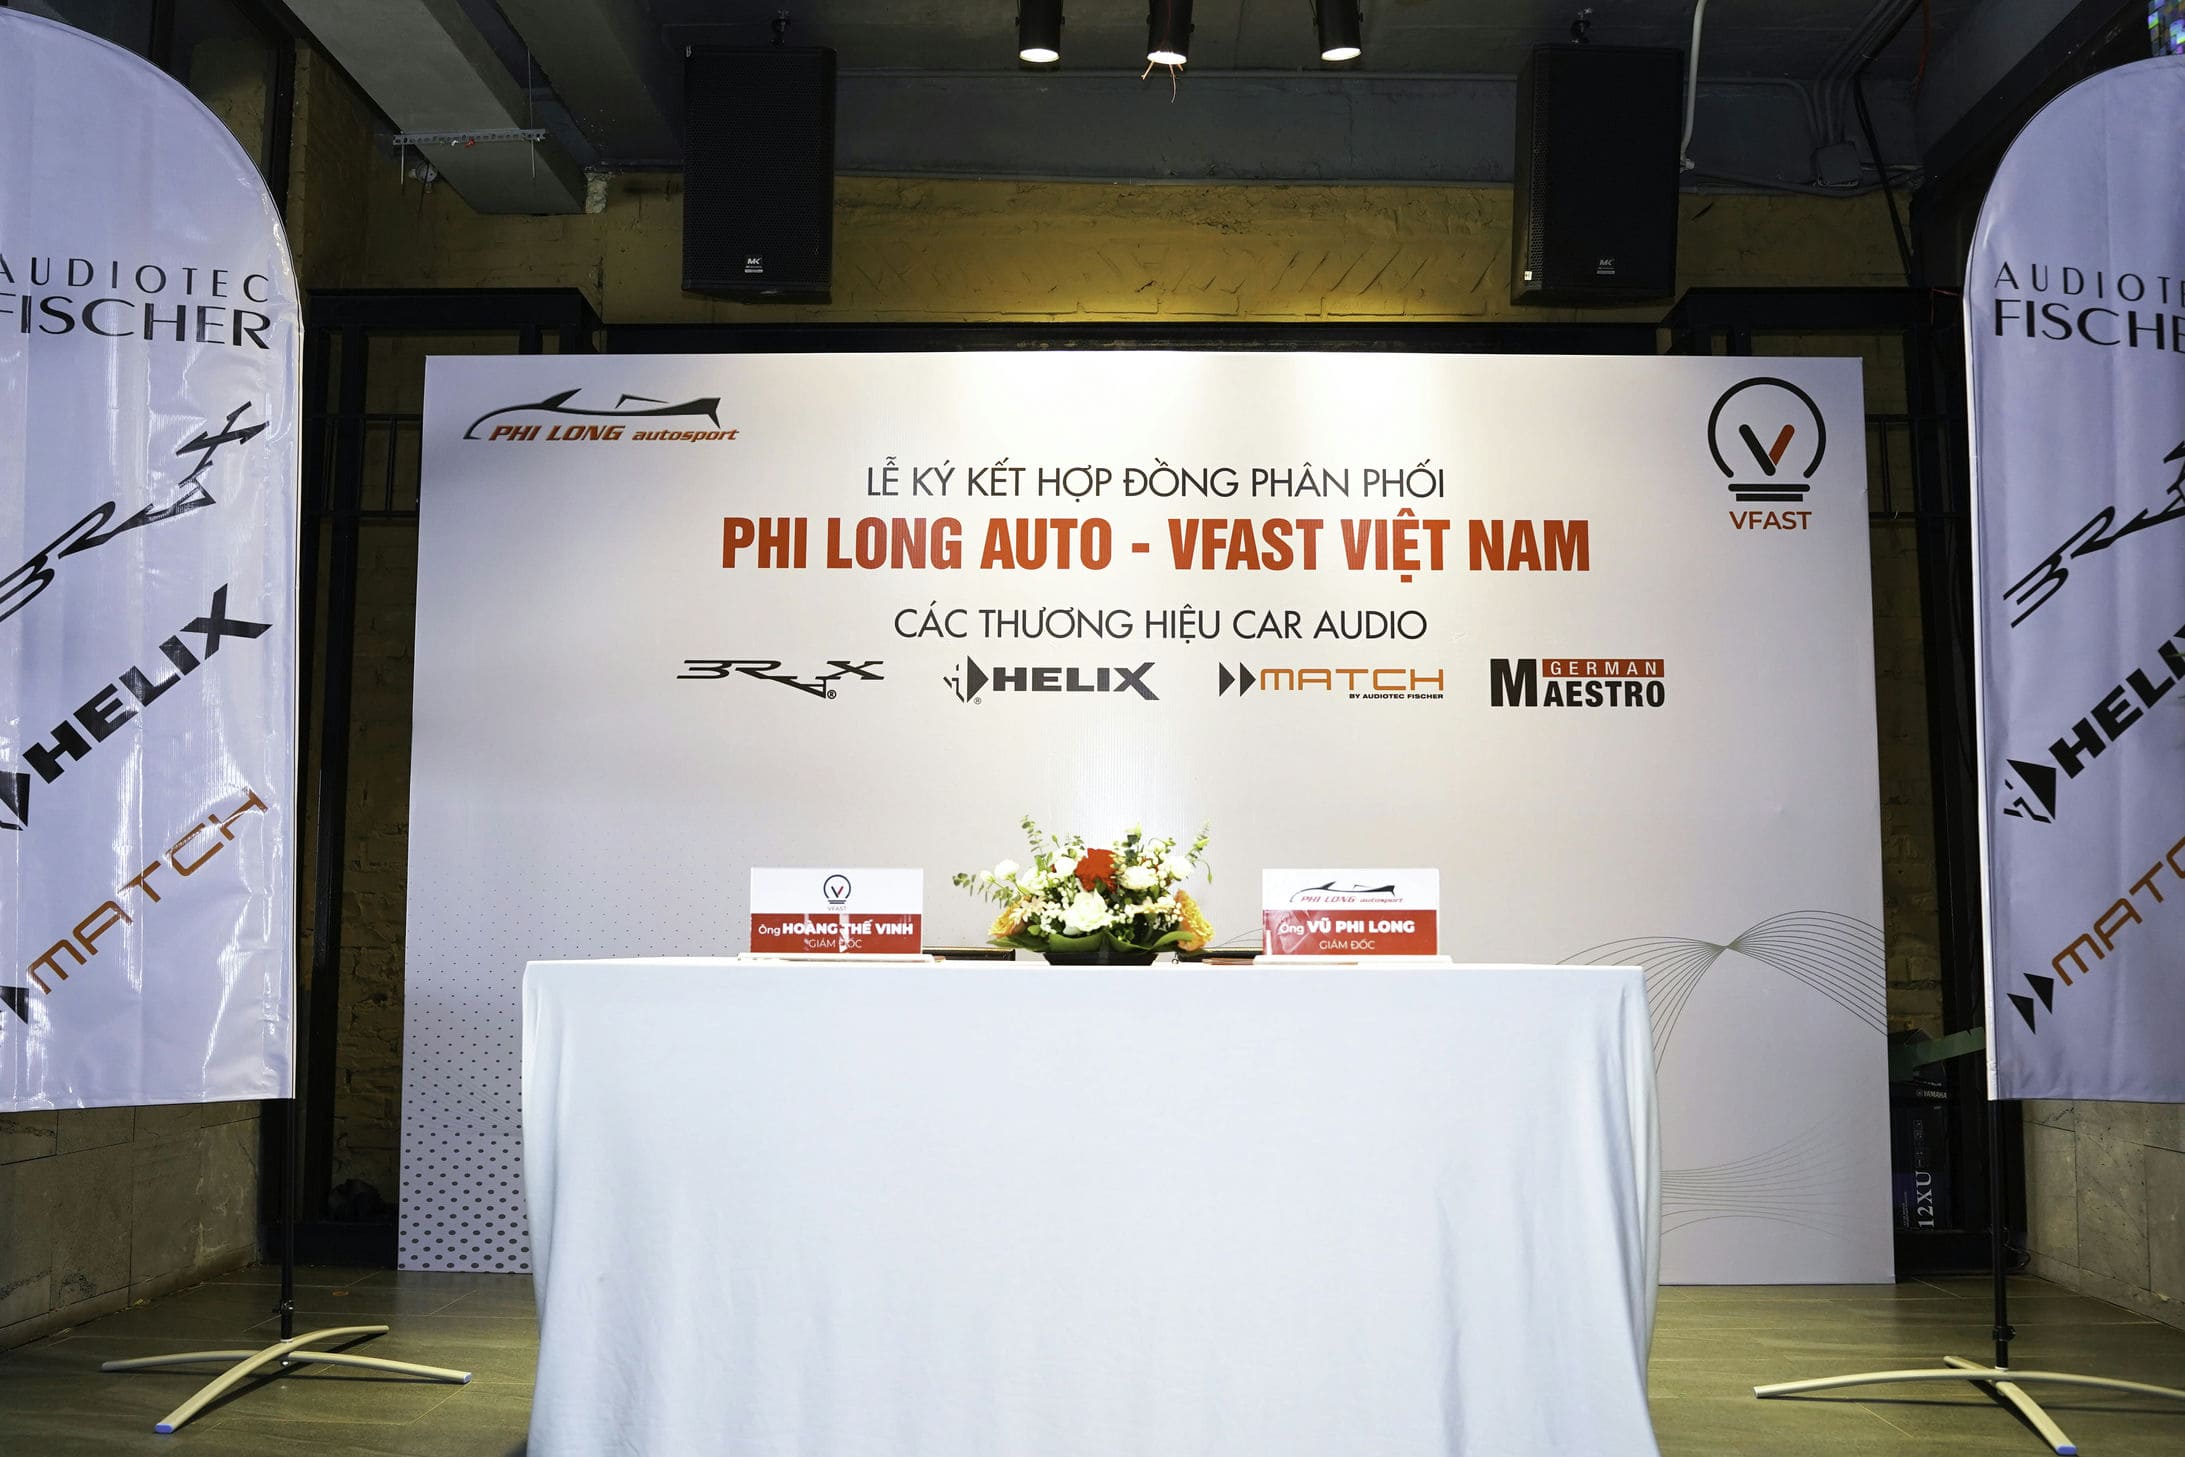 LE KY KET HOP DONG PHAN PHOI GIUA PHI LONG AUTO VFAST VIET NAM 5 | Phi Long Auto